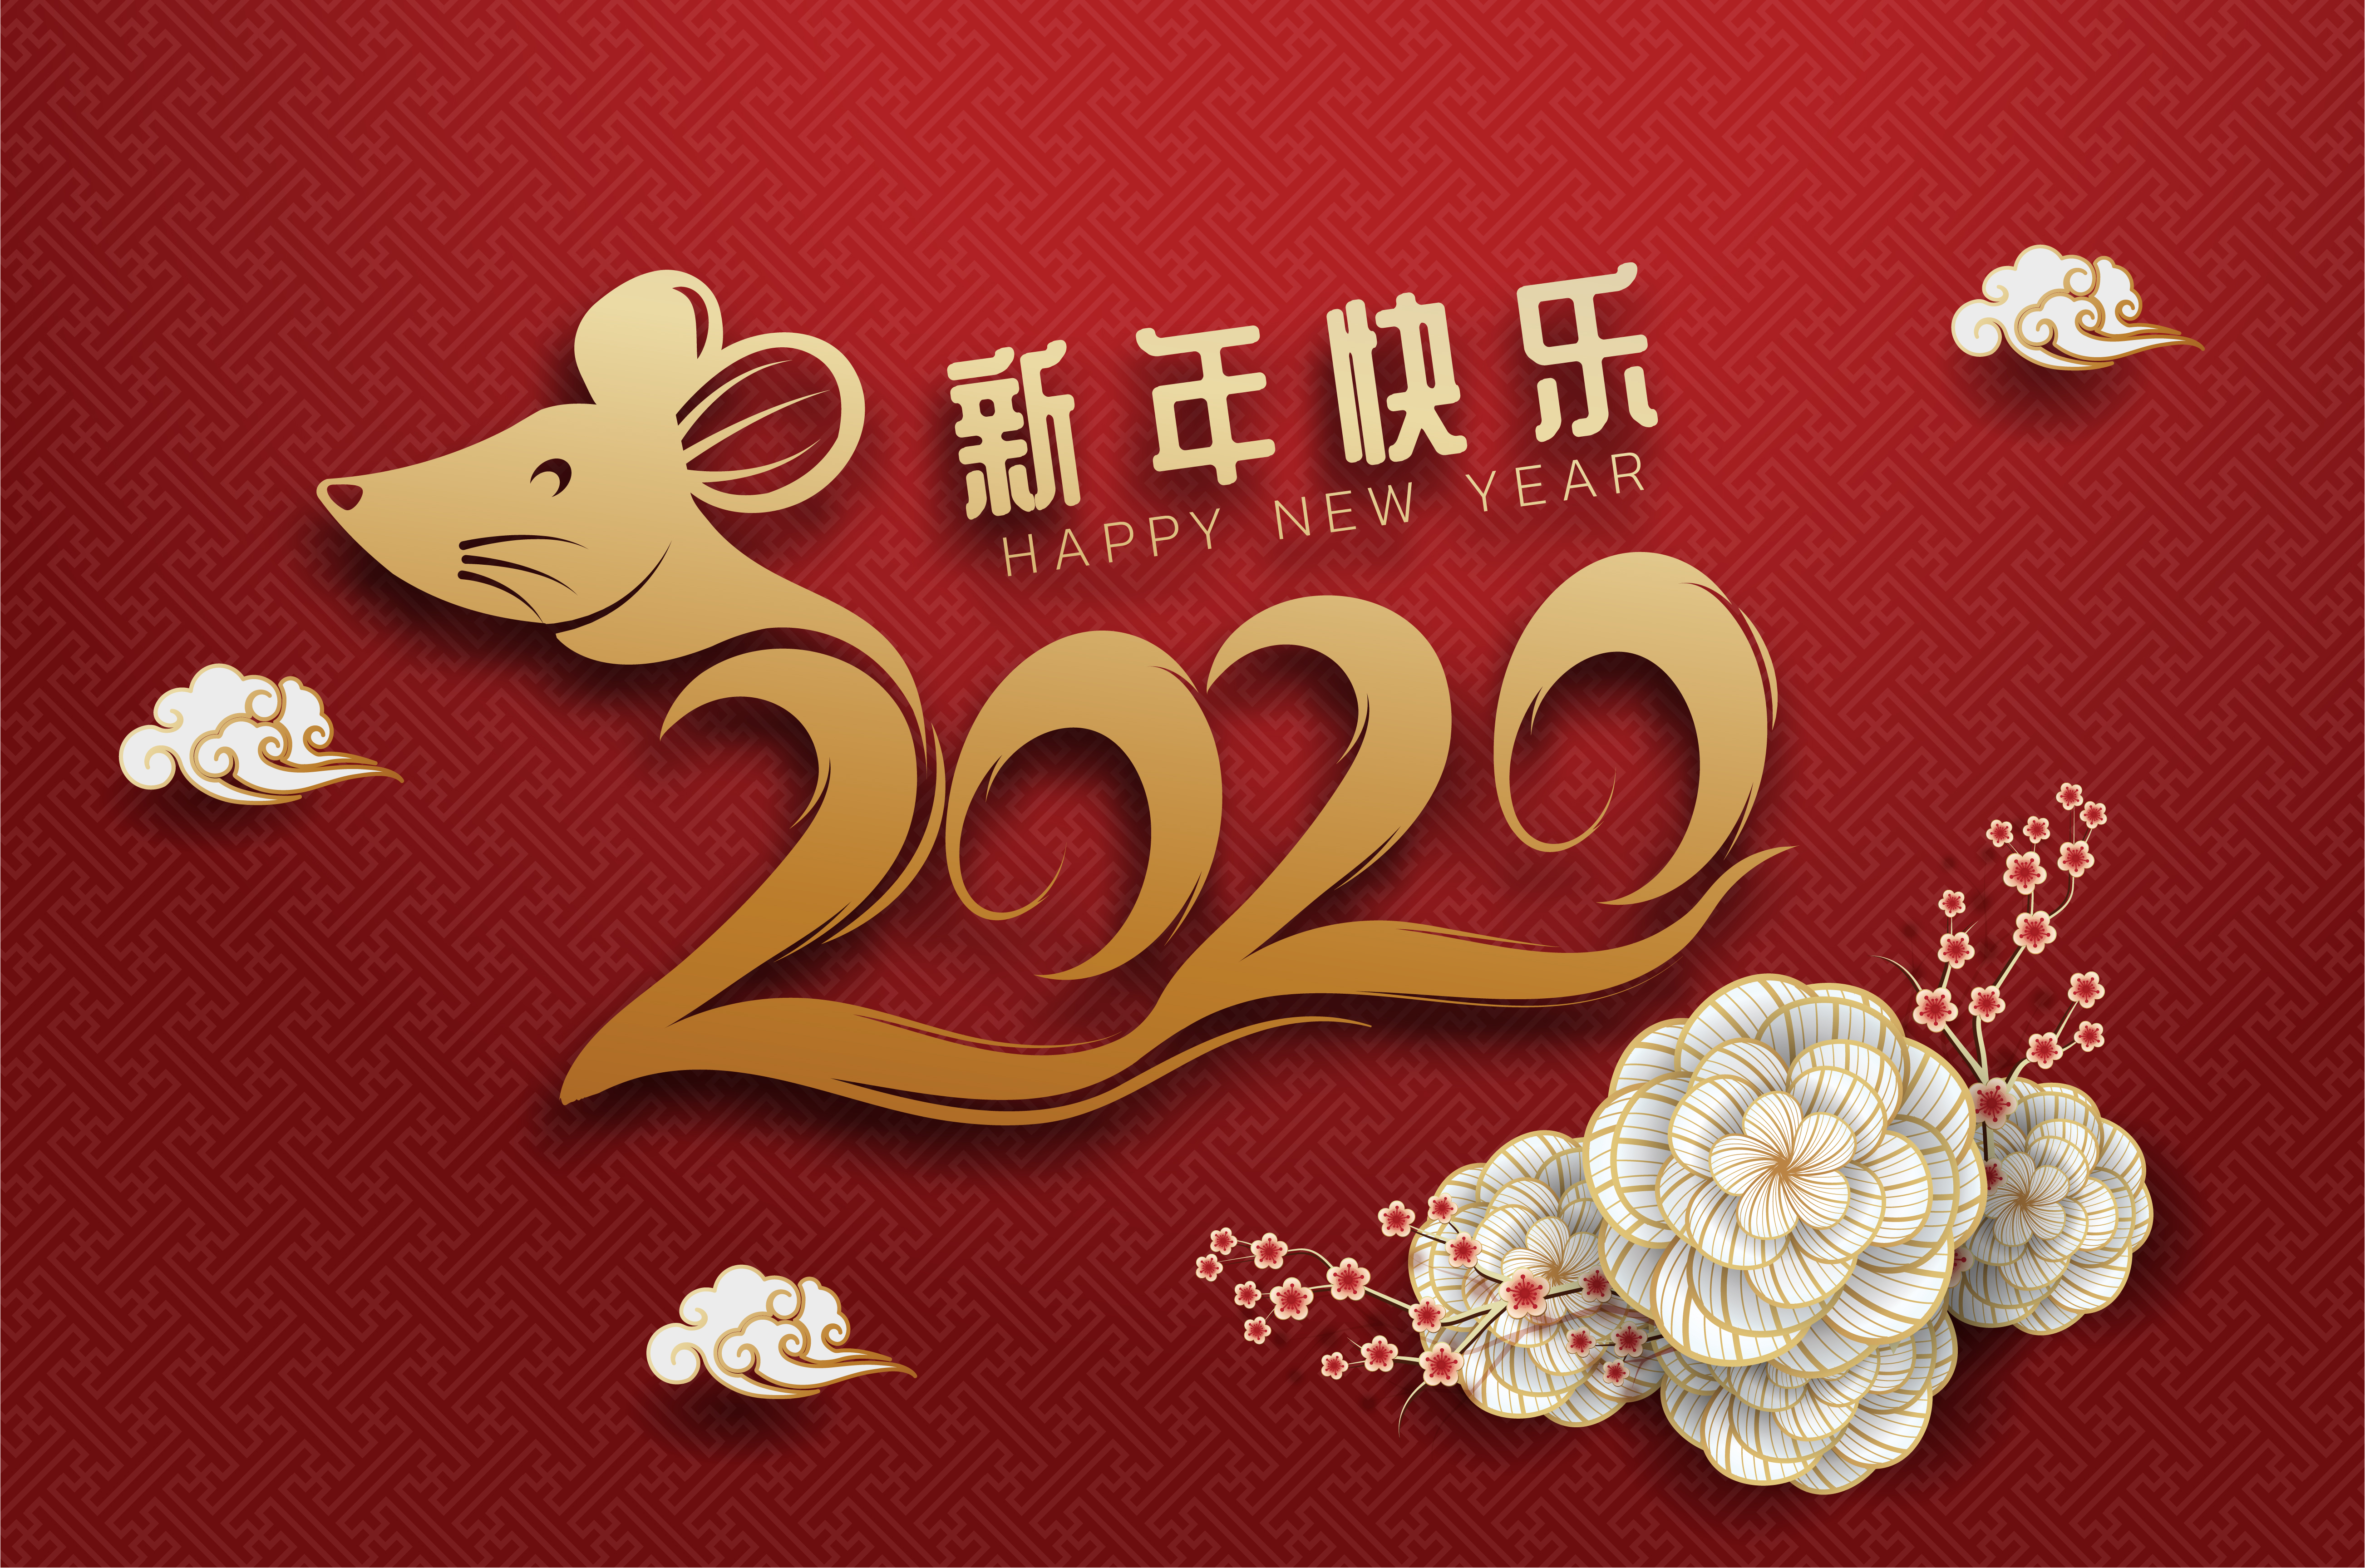 Tarjeta de felicitación de año nuevo chino 2020 Signo del zodiaco con corte de papel ...5210 x 3454